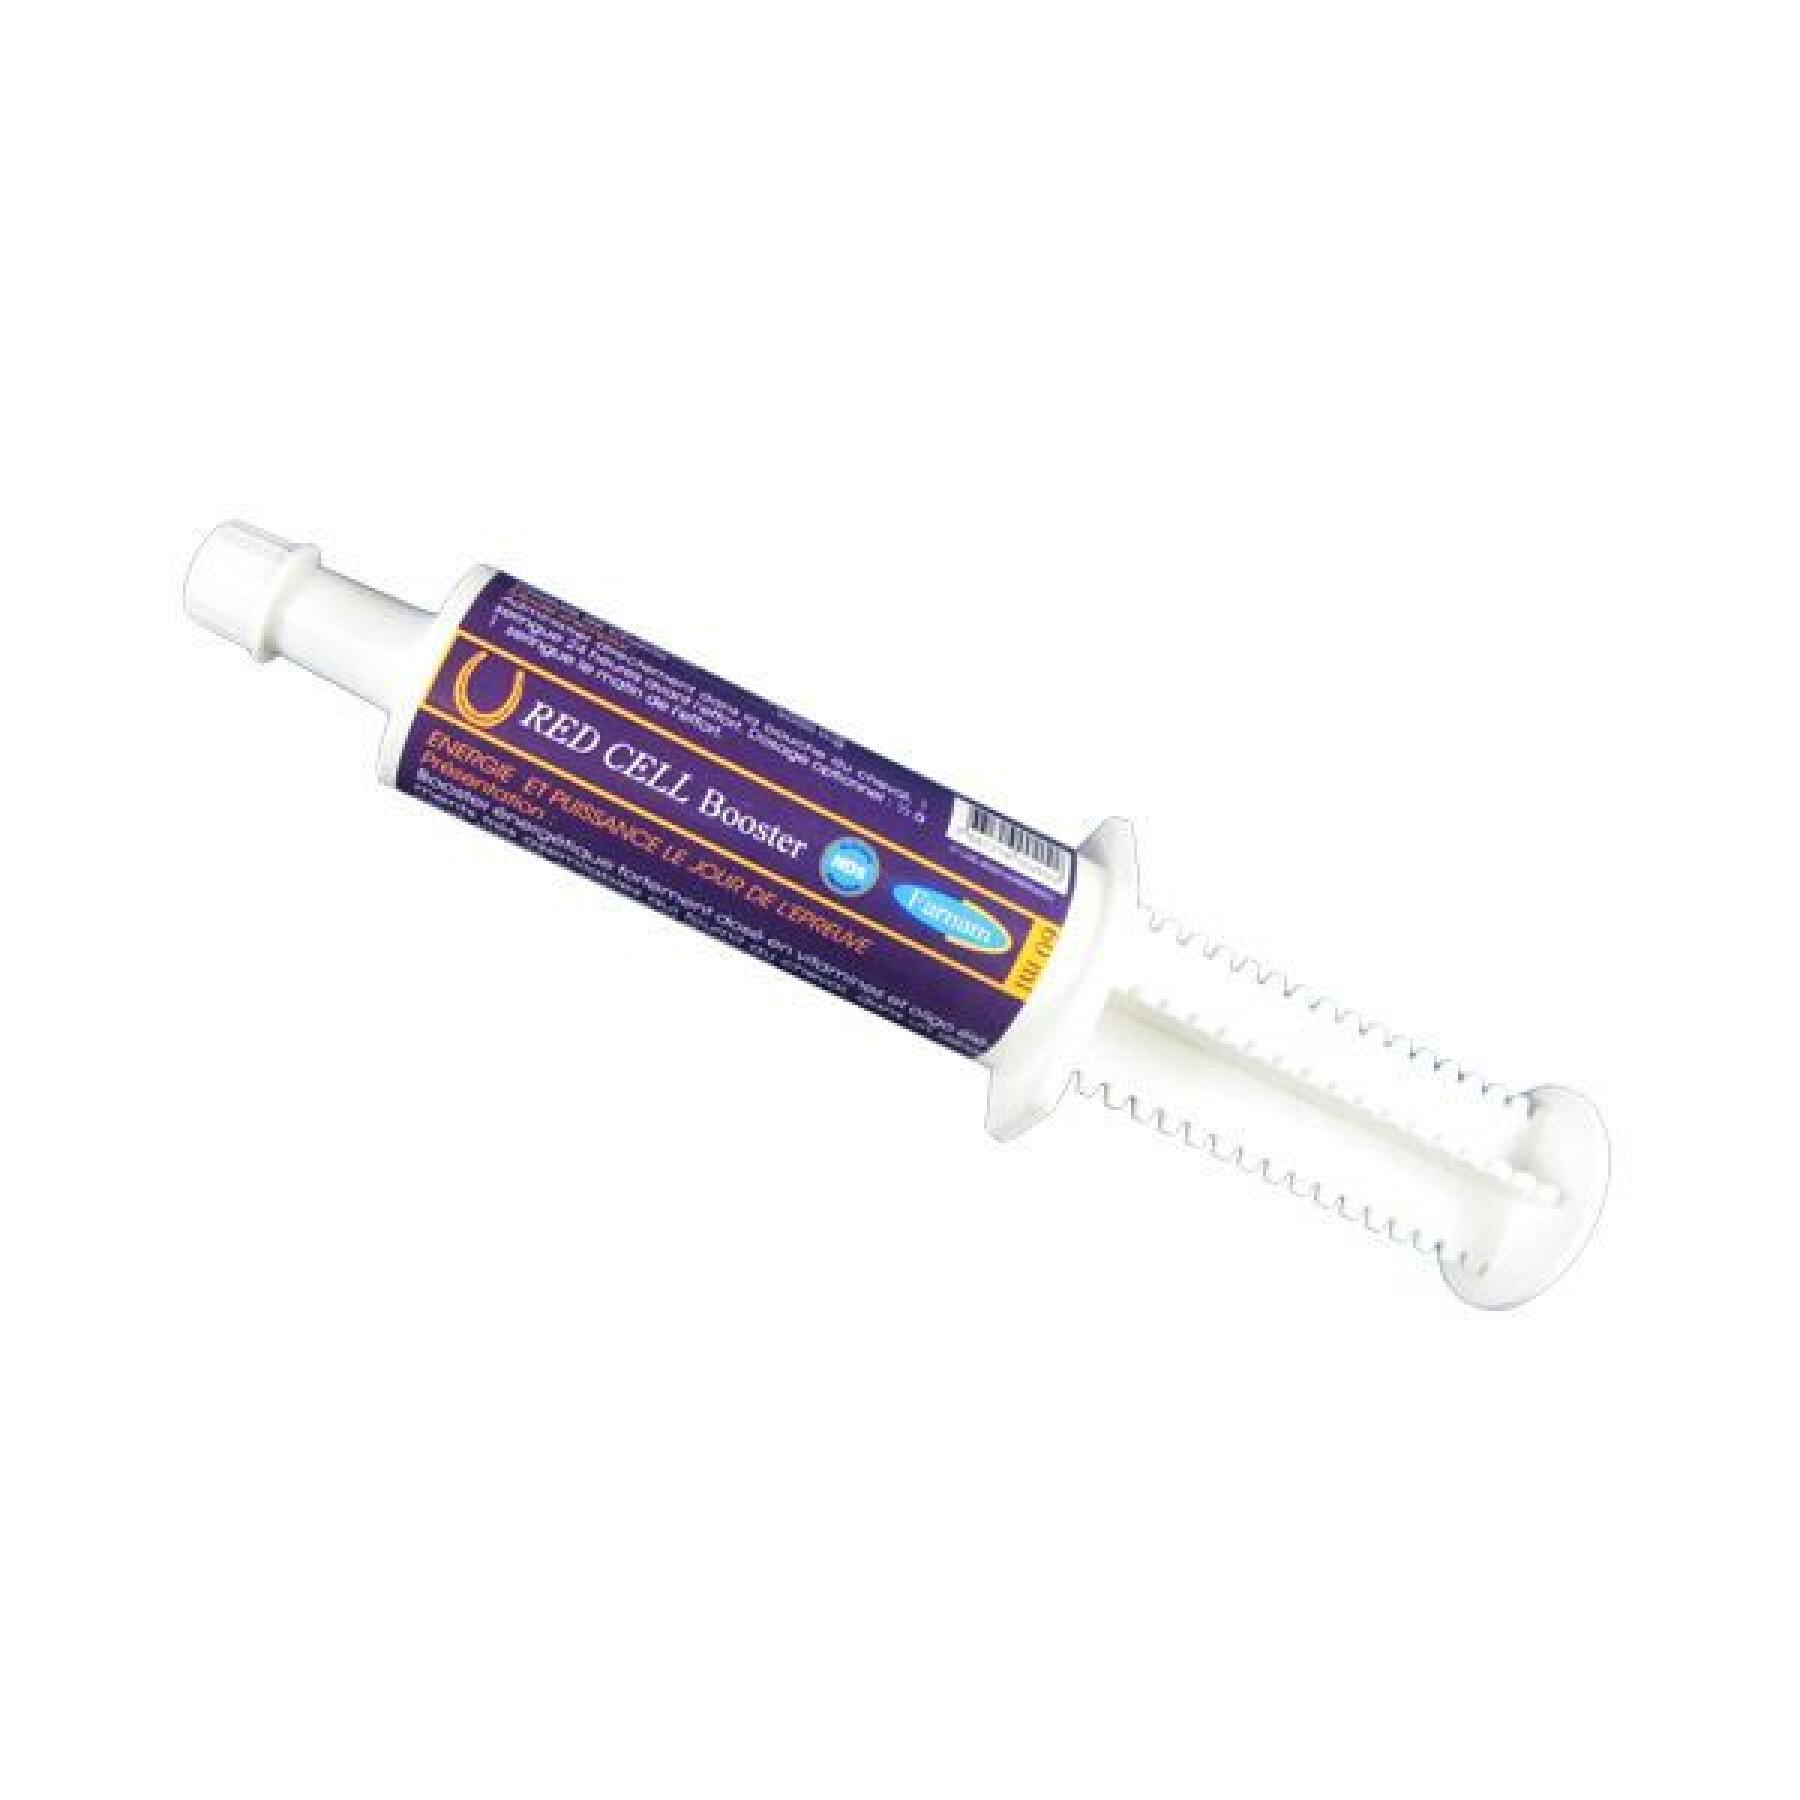 Syringe for performance sport horses Farnam Red Cell Booster